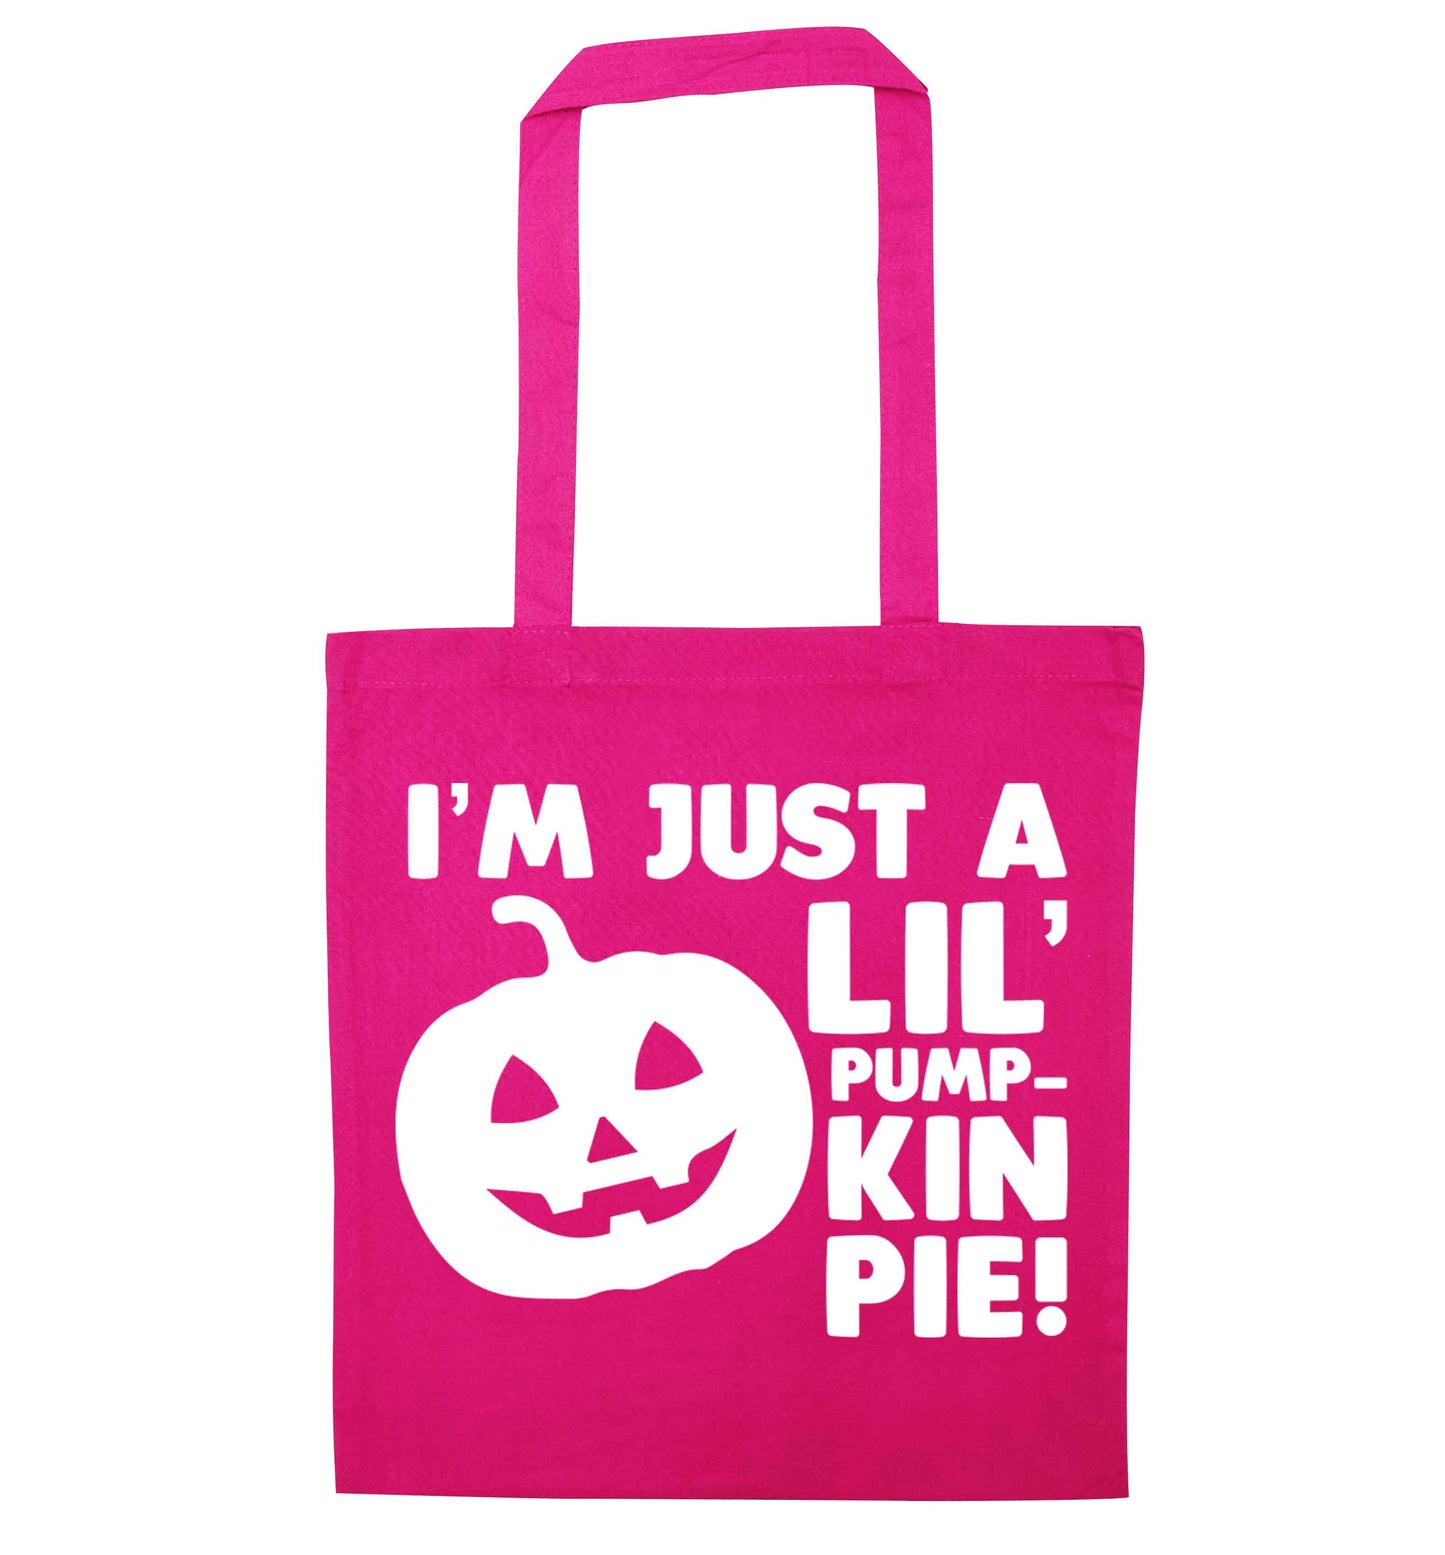 I'm just a lil' pumpkin pie pink tote bag